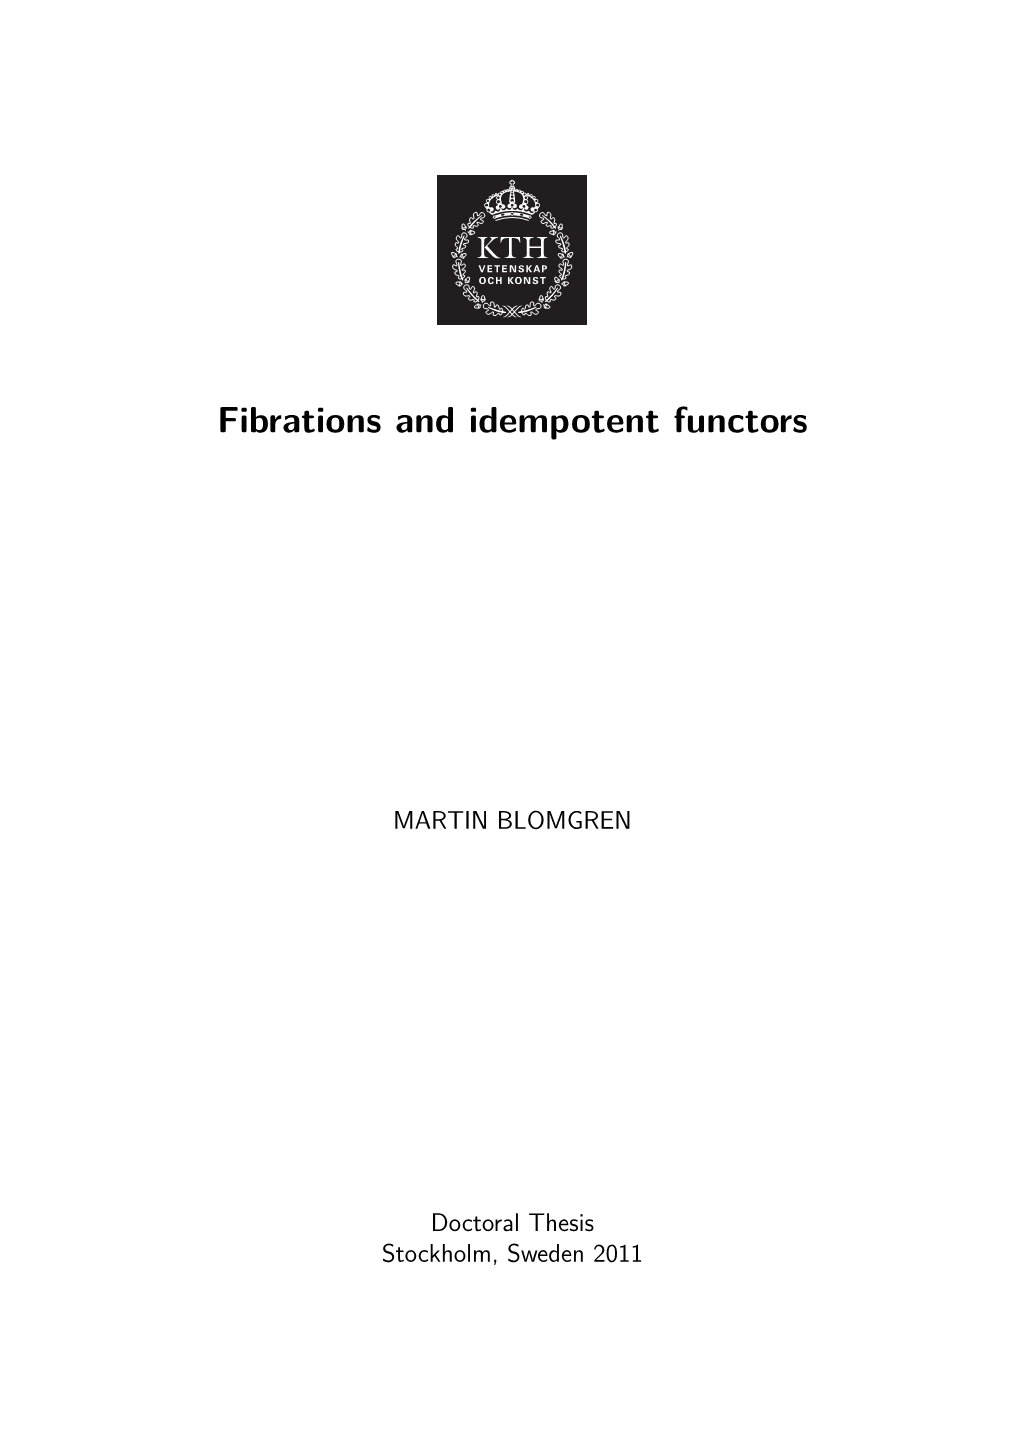 Fibrations and Idempotent Functors